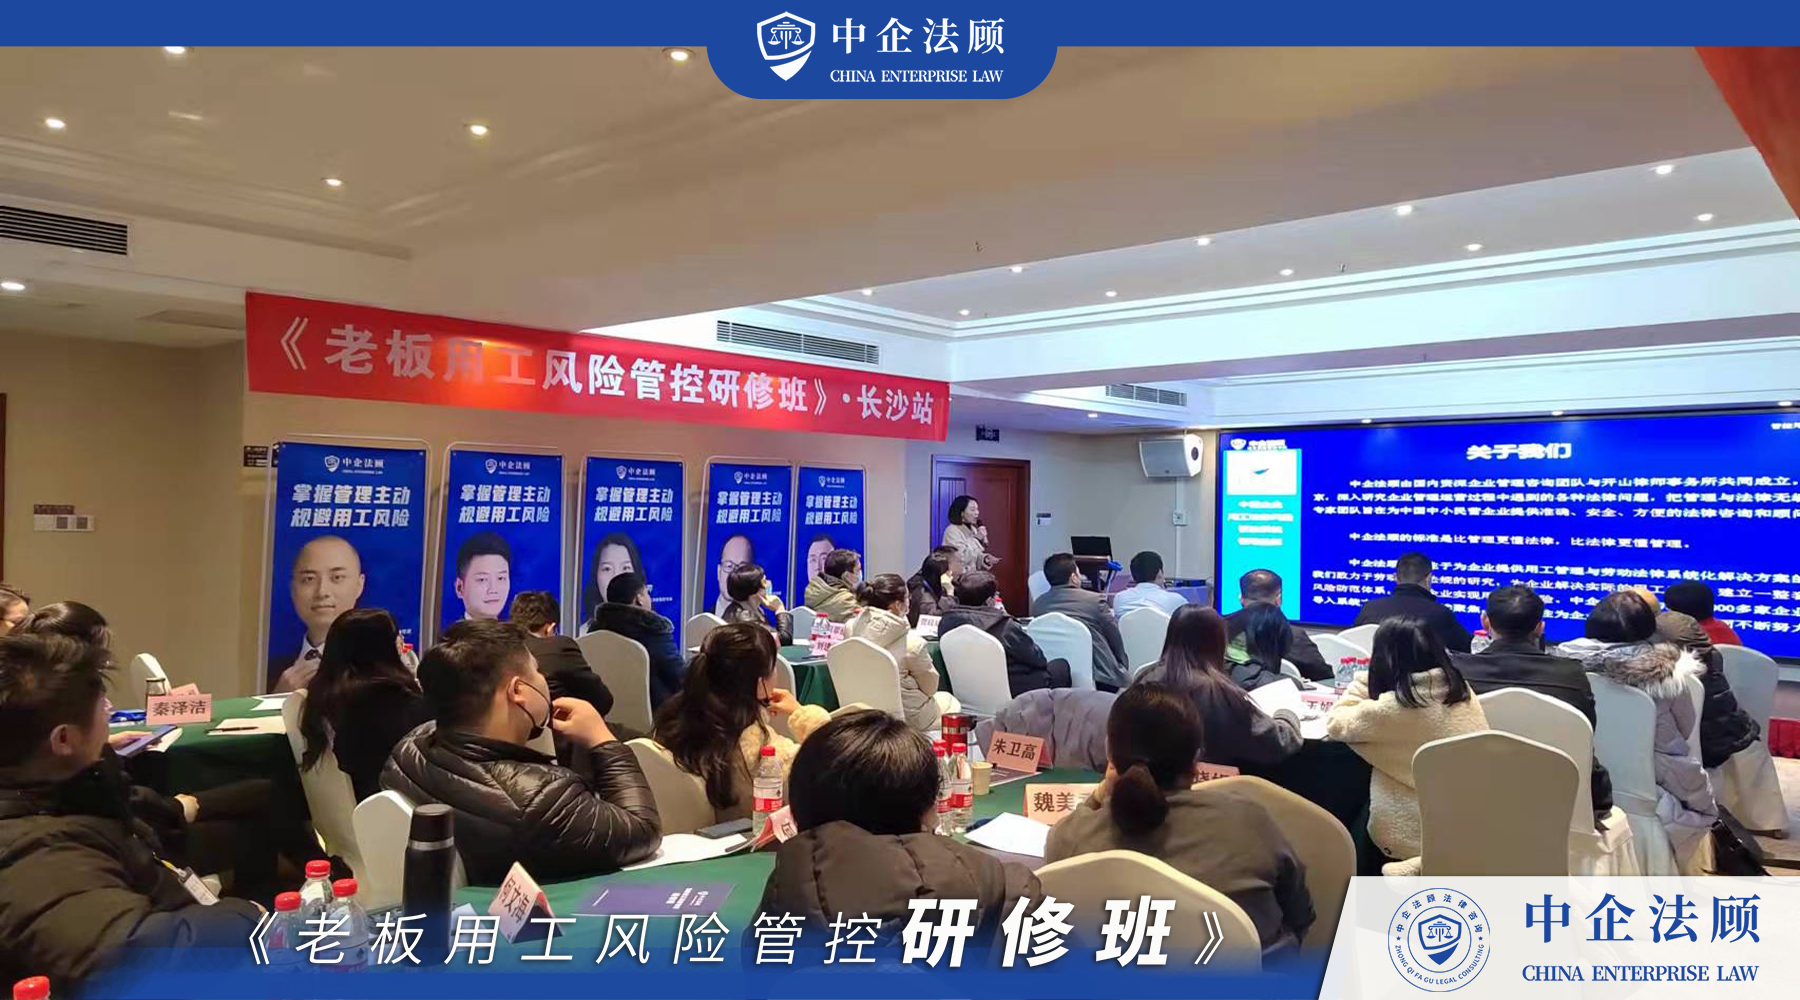 12月30日《老板用工风险管控研修班》深圳、长沙、重庆、杭州同时开课中 